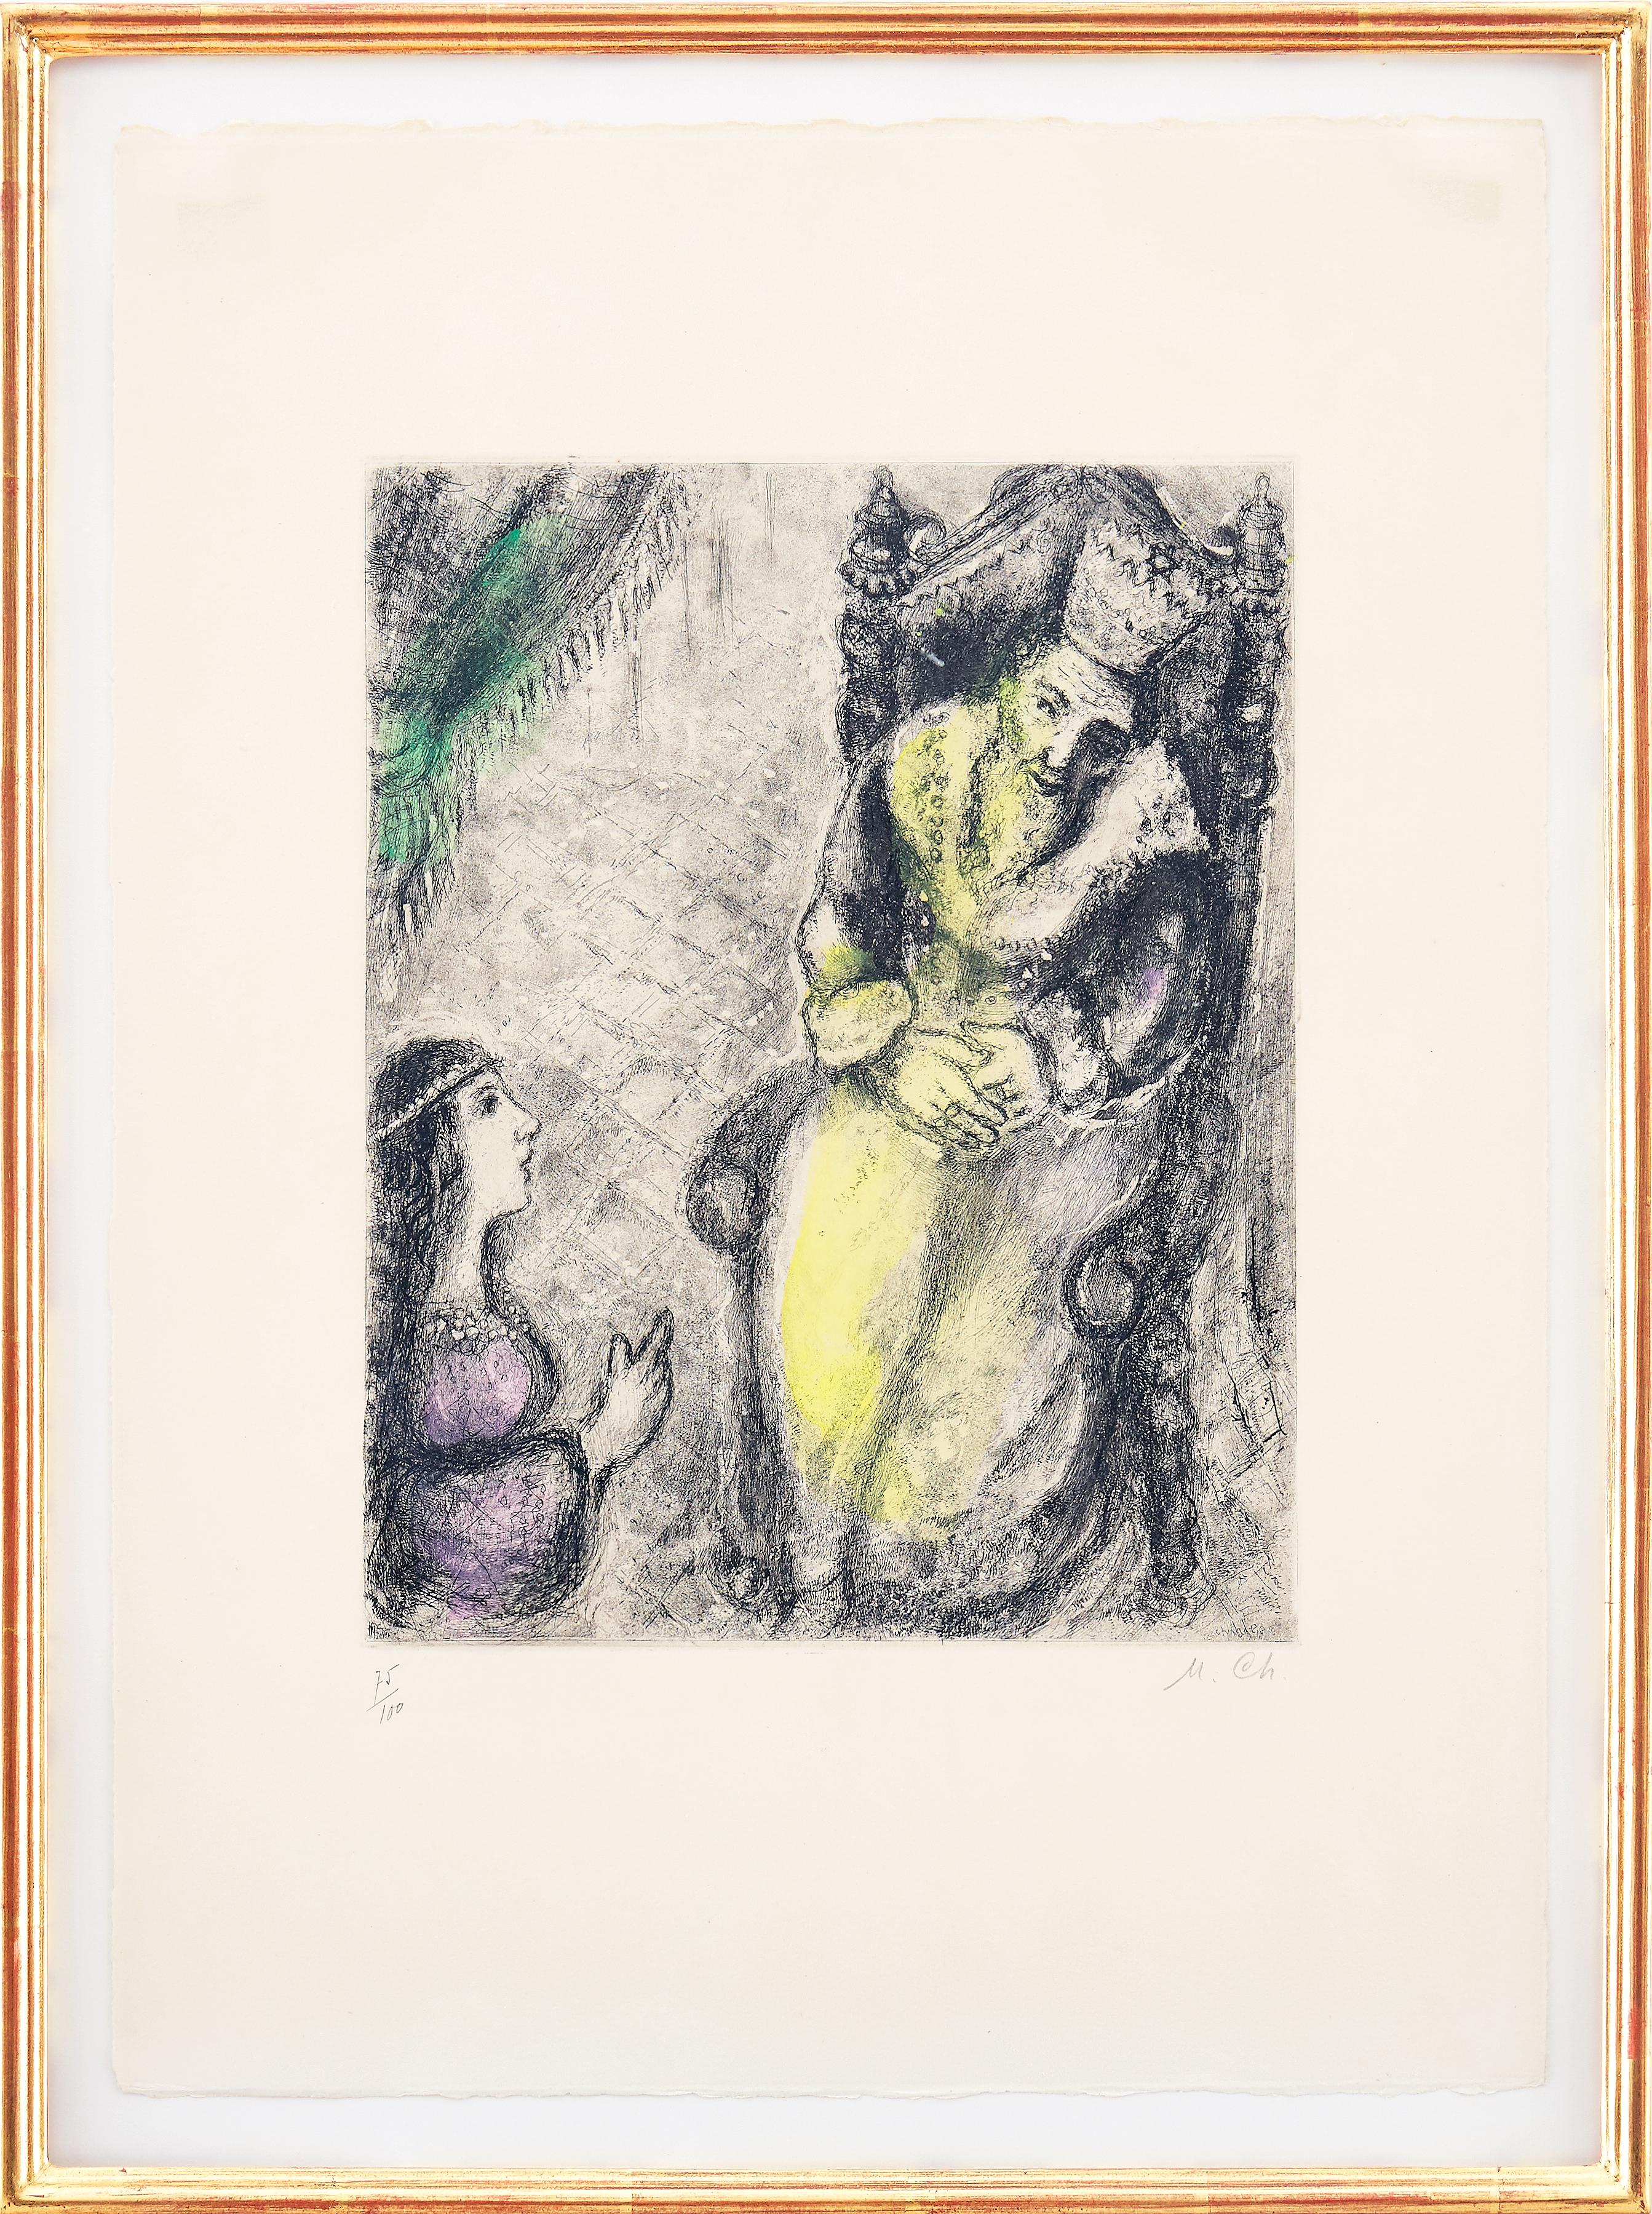 Marc Chagall - Bath-Sheba aux pieds de David - Gravure originale signée à la main
1958
Imprimé par Tériade
Dimensions : 54 x 39 cm 
Signé et numéroté à la main 
coloré à la main
Edition : 100
Référence : Cramer 30. 
Eau-forte coloriée à la main,